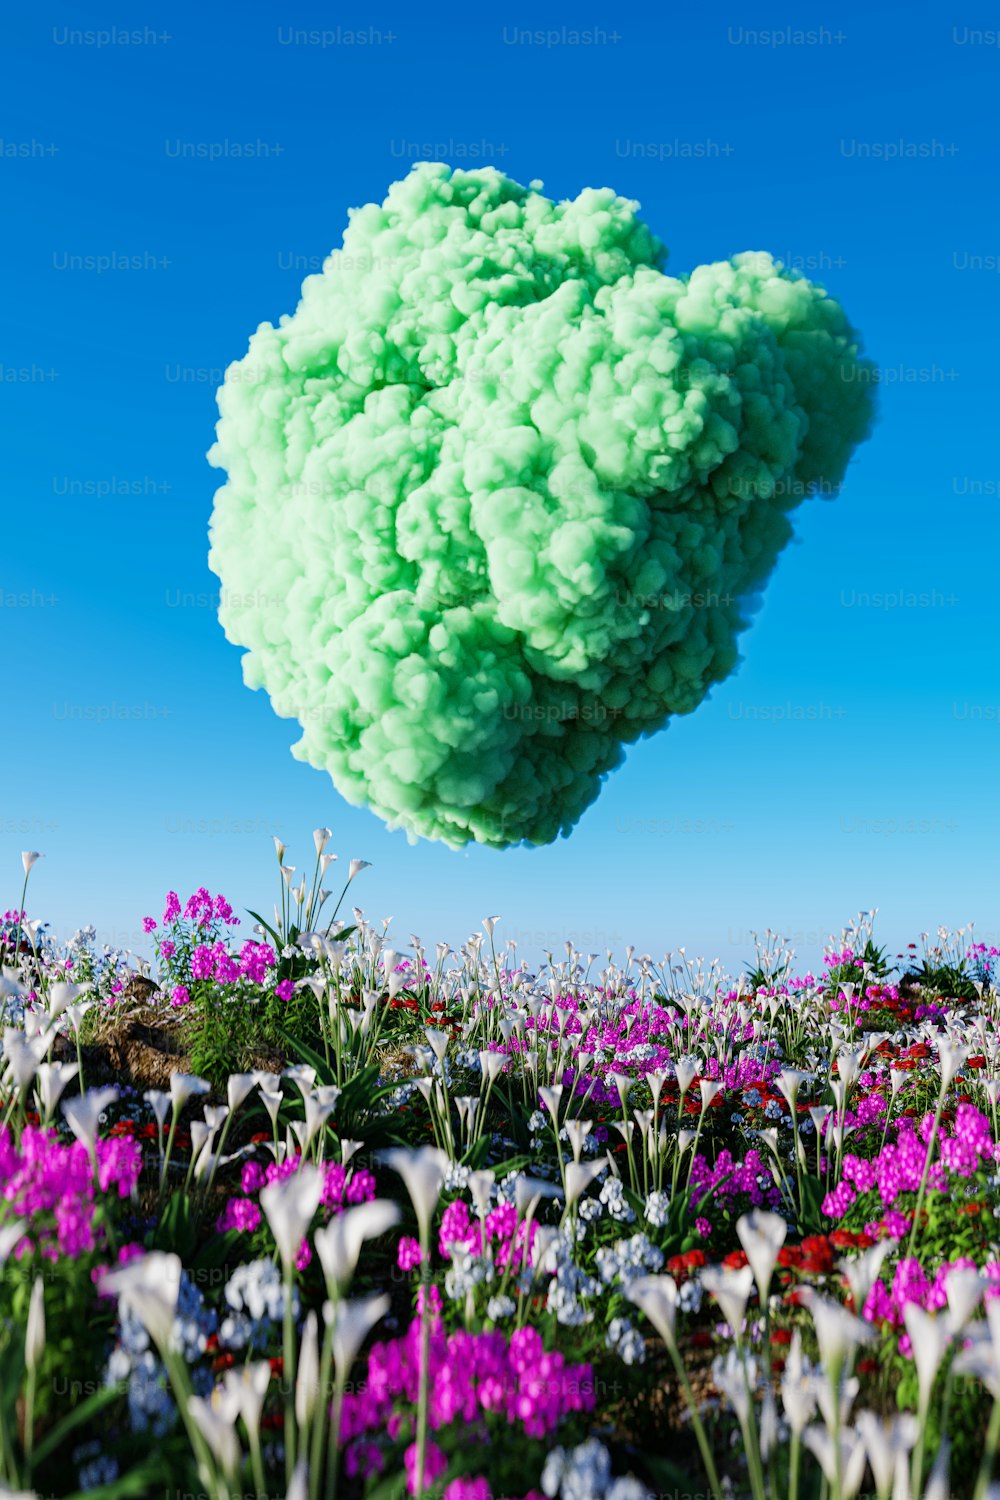 una nuvola di fiori verdi e viola che fluttuano nell'aria